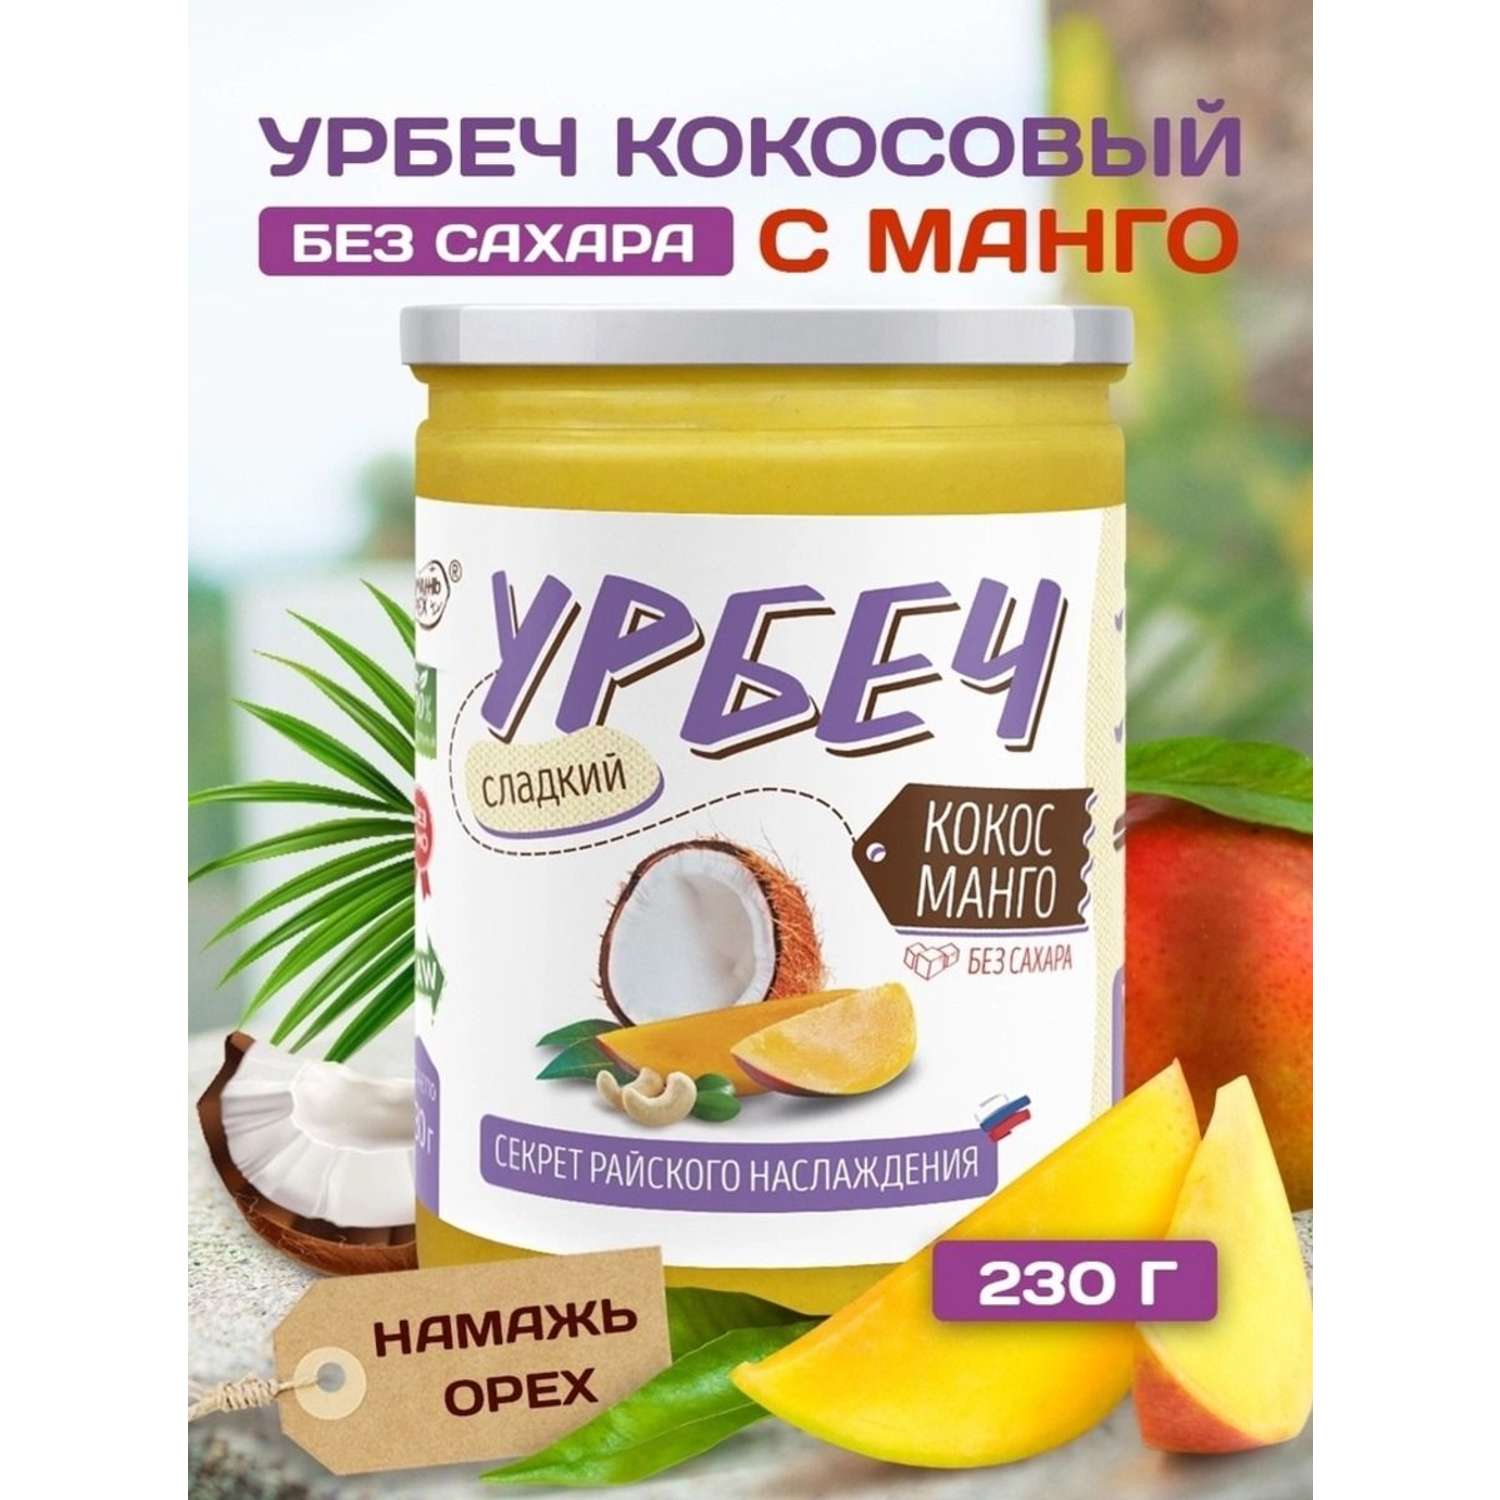 Урбеч Намажь орех кокосовый с манго 230 грамм - фото 1